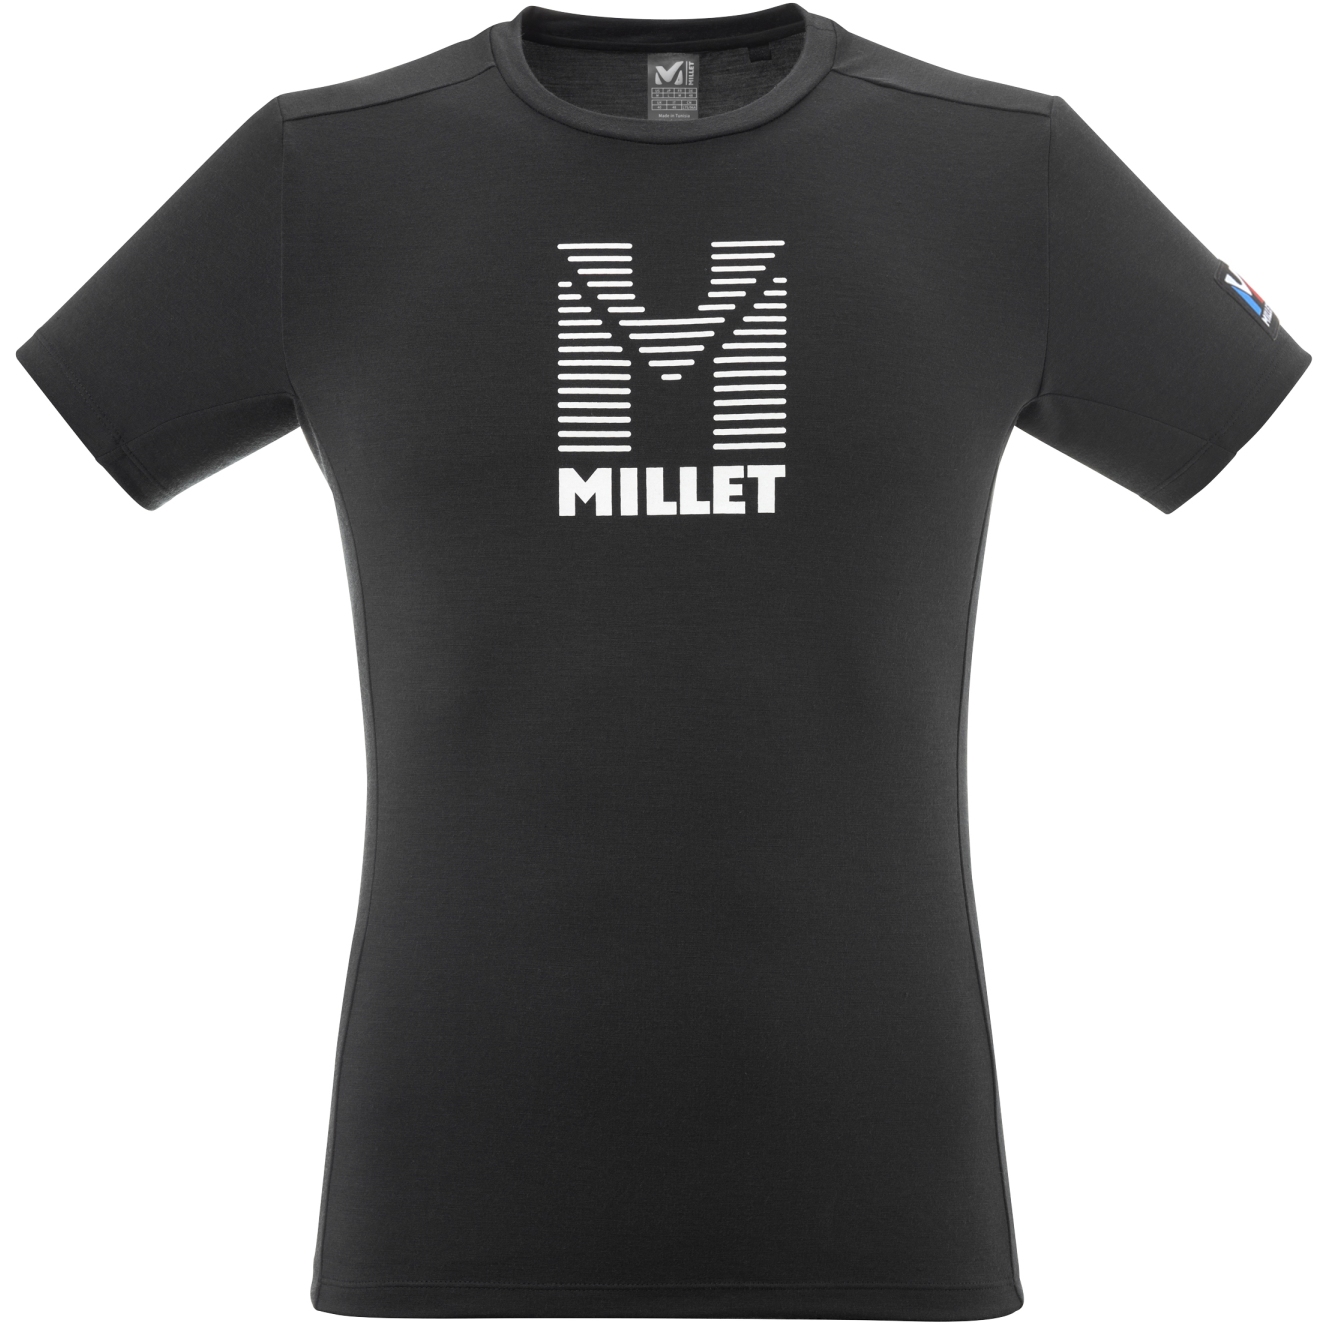 Produktbild von Millet Trilogy Wool Stripes T-Shirt Herren - Schwarz